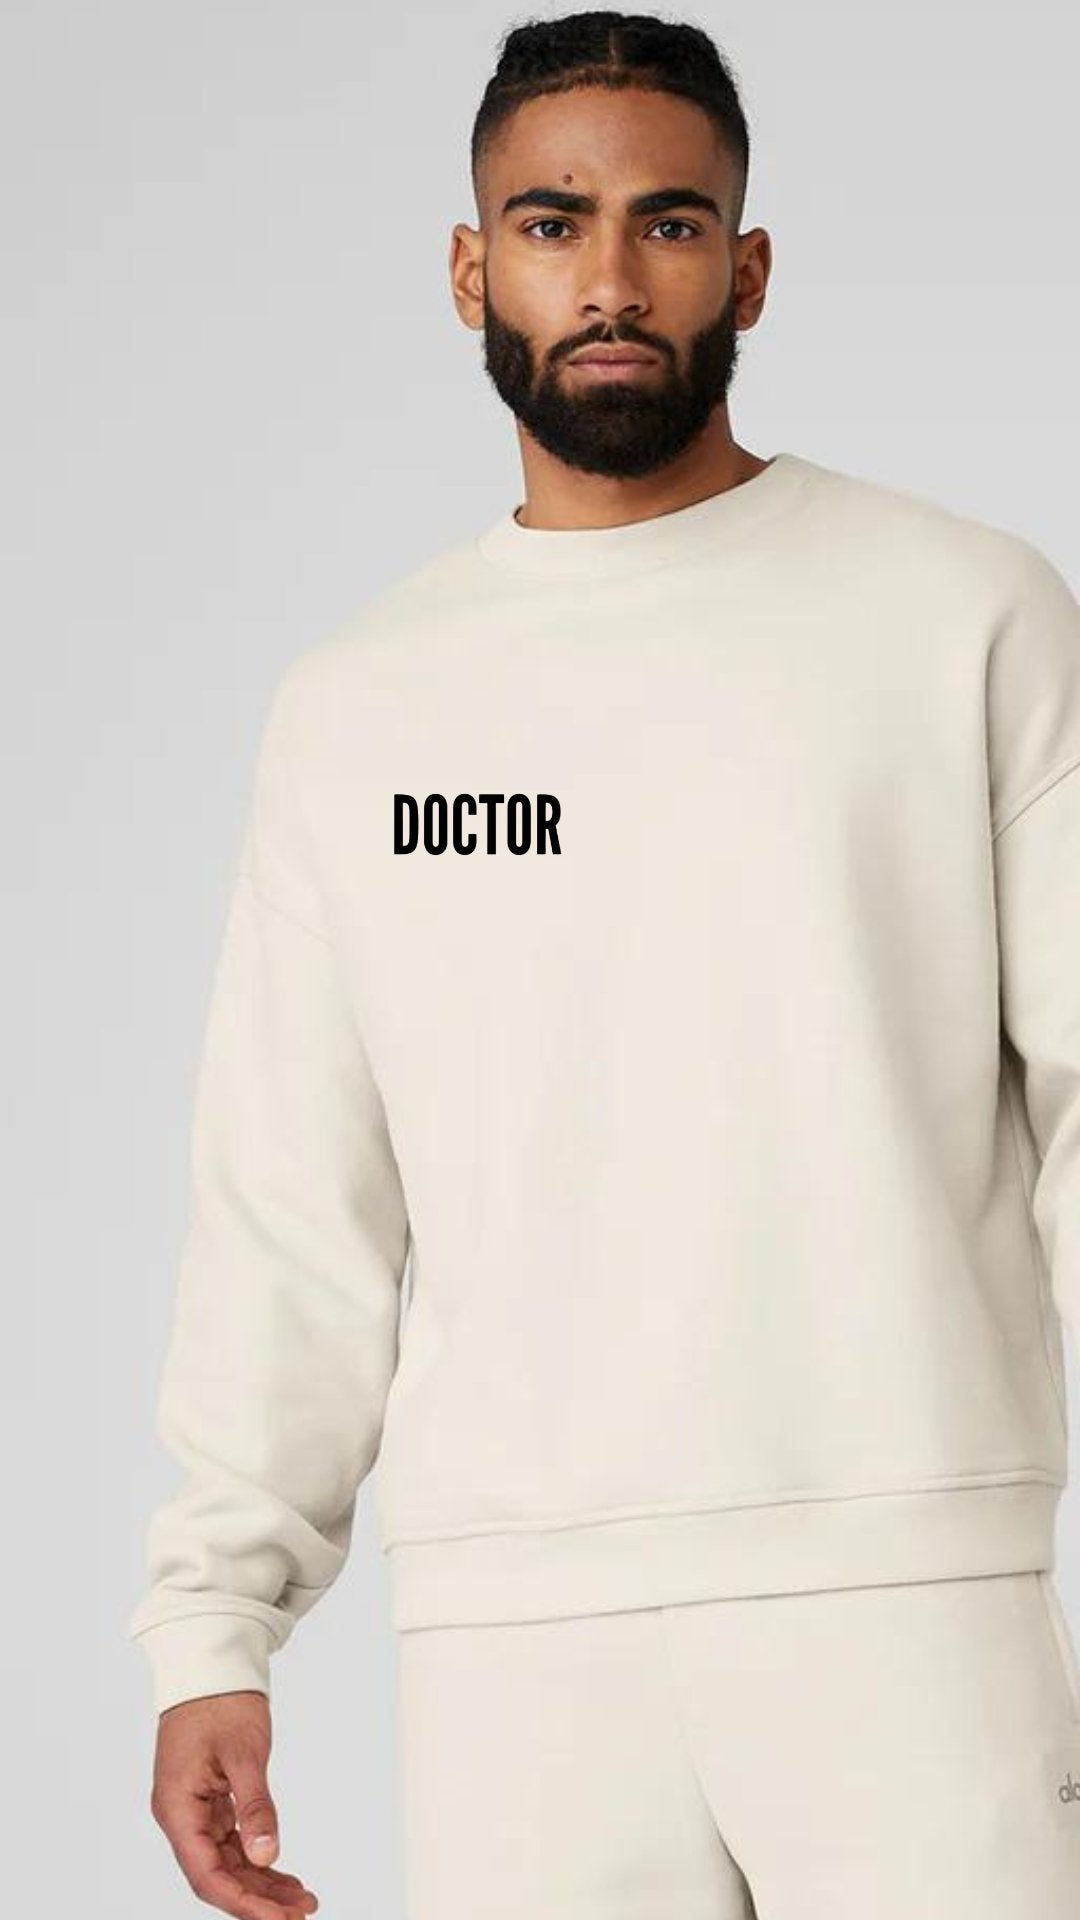 Hi, my name is "DOCTOR______" Luxury Unisex Sweatshirt - The Woman Doctor